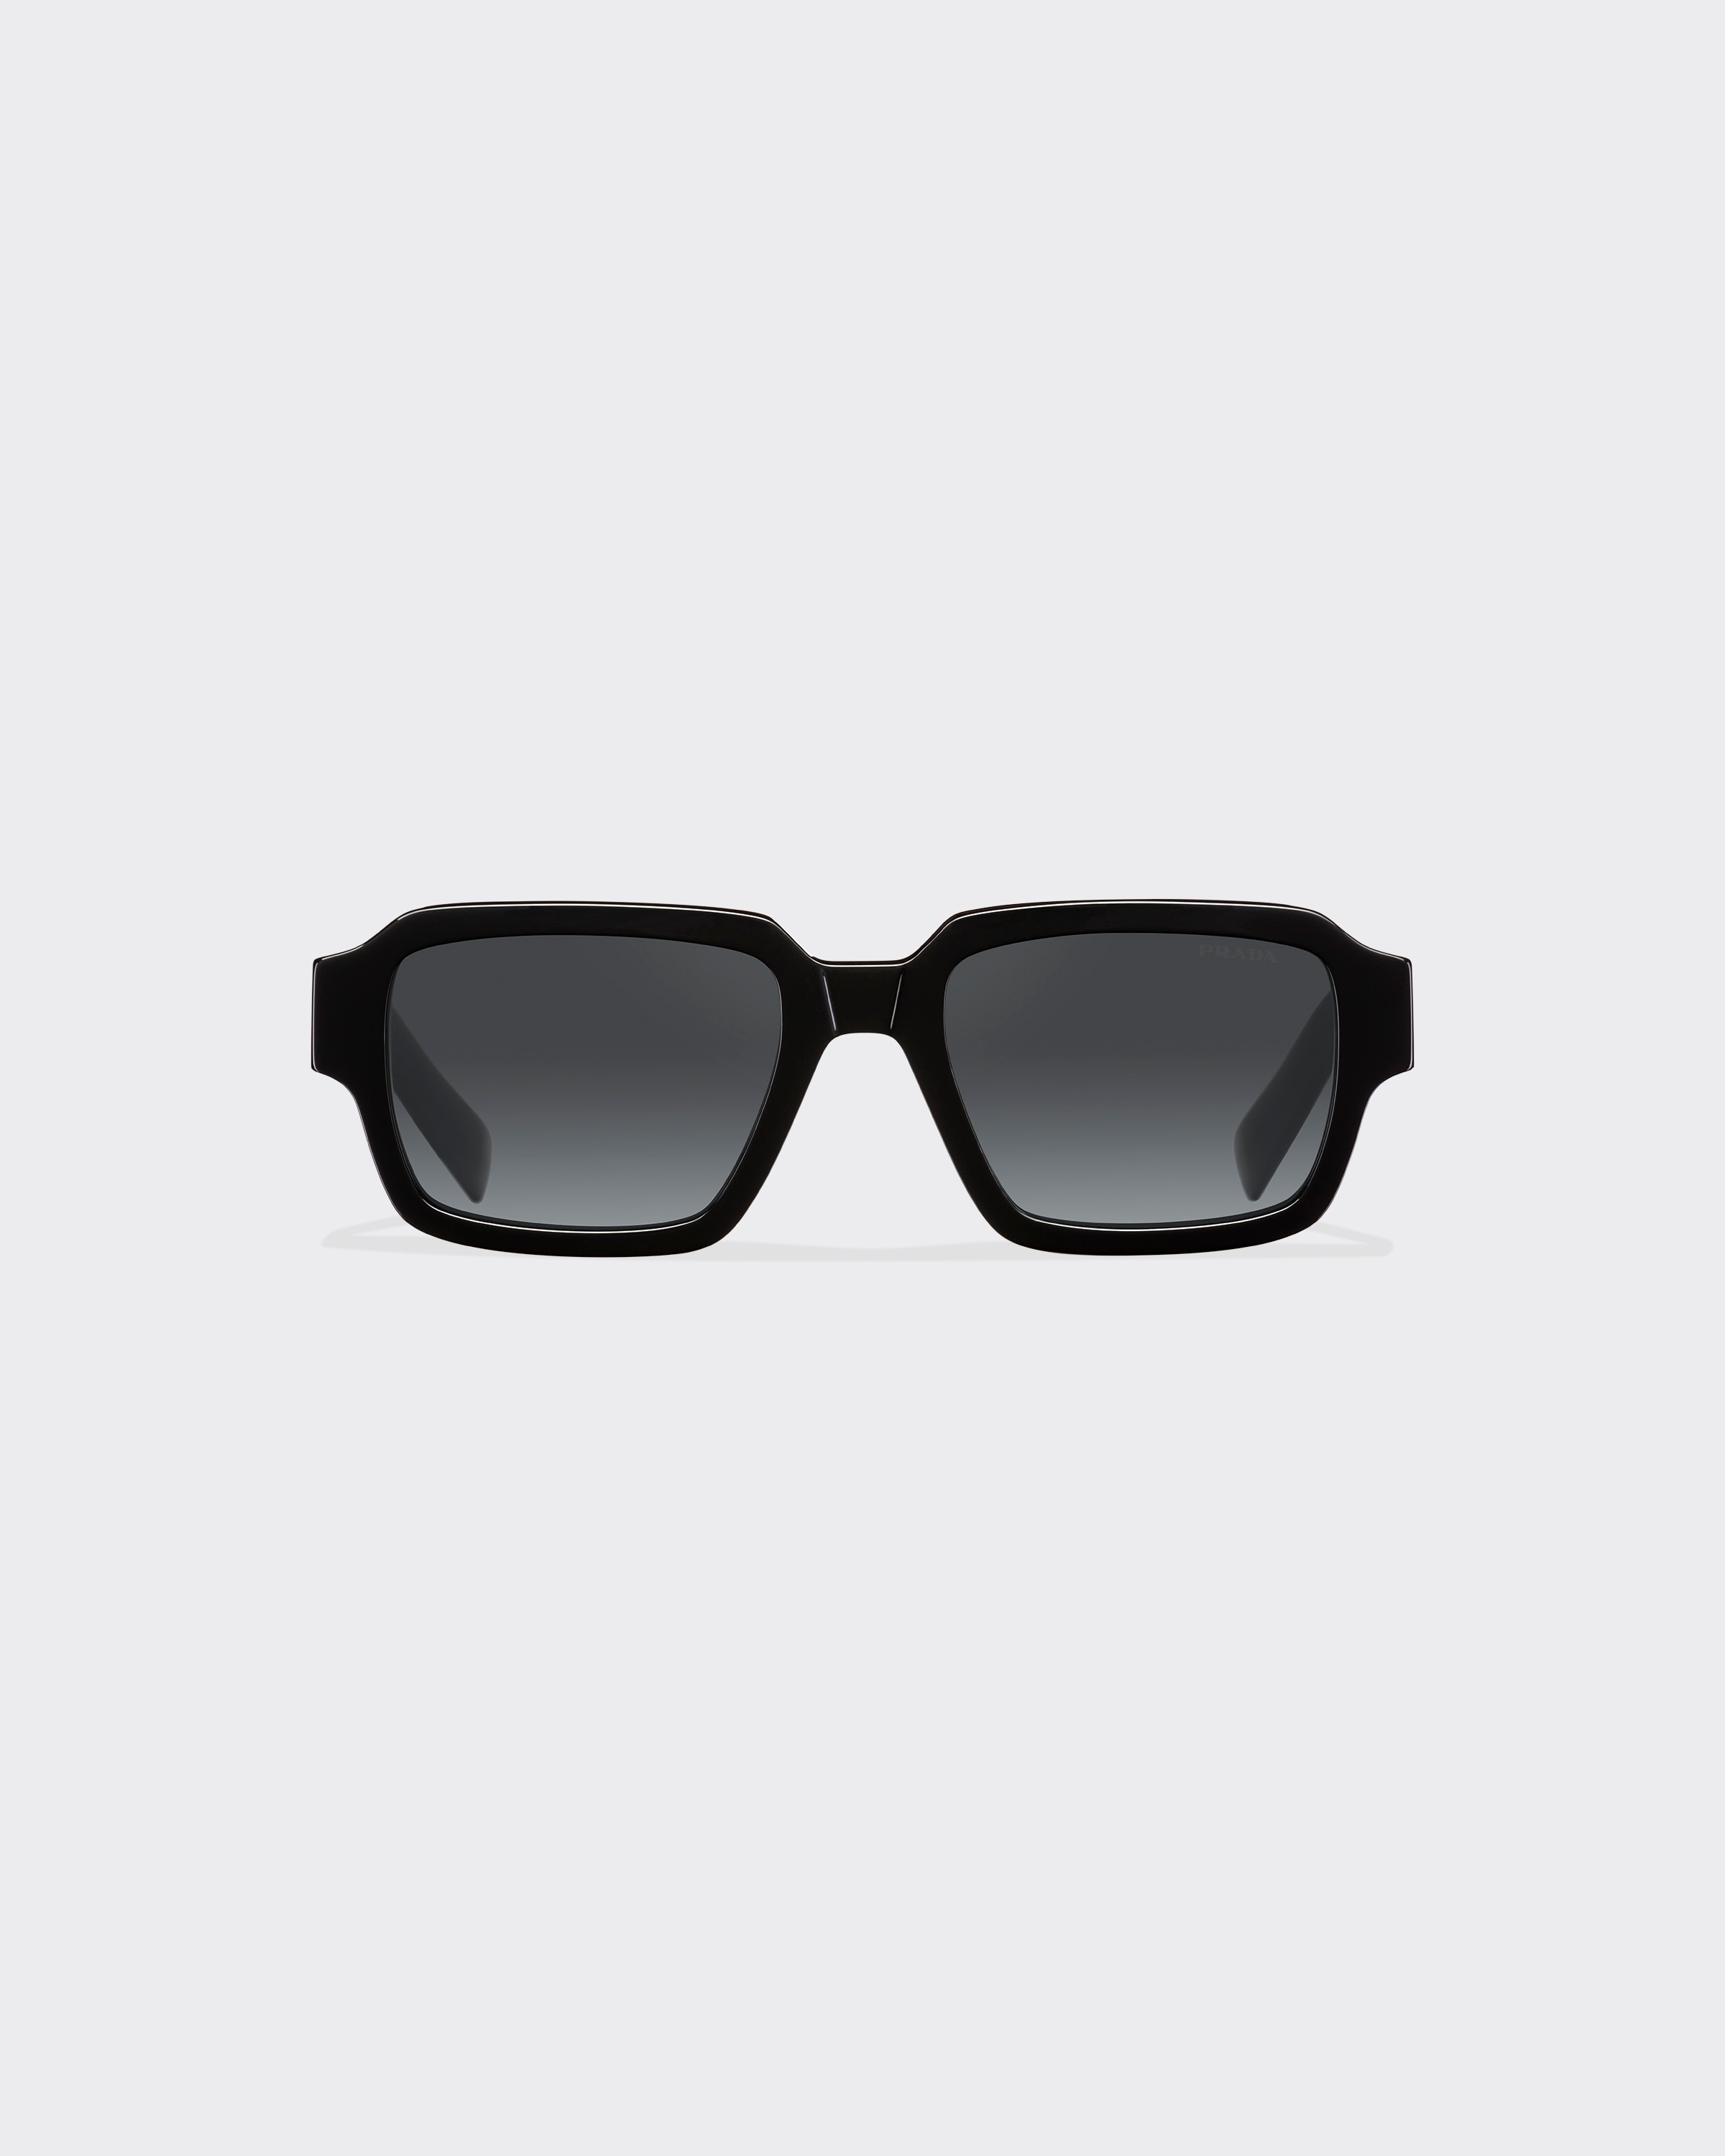 Sunglasses with Prada logo - 1